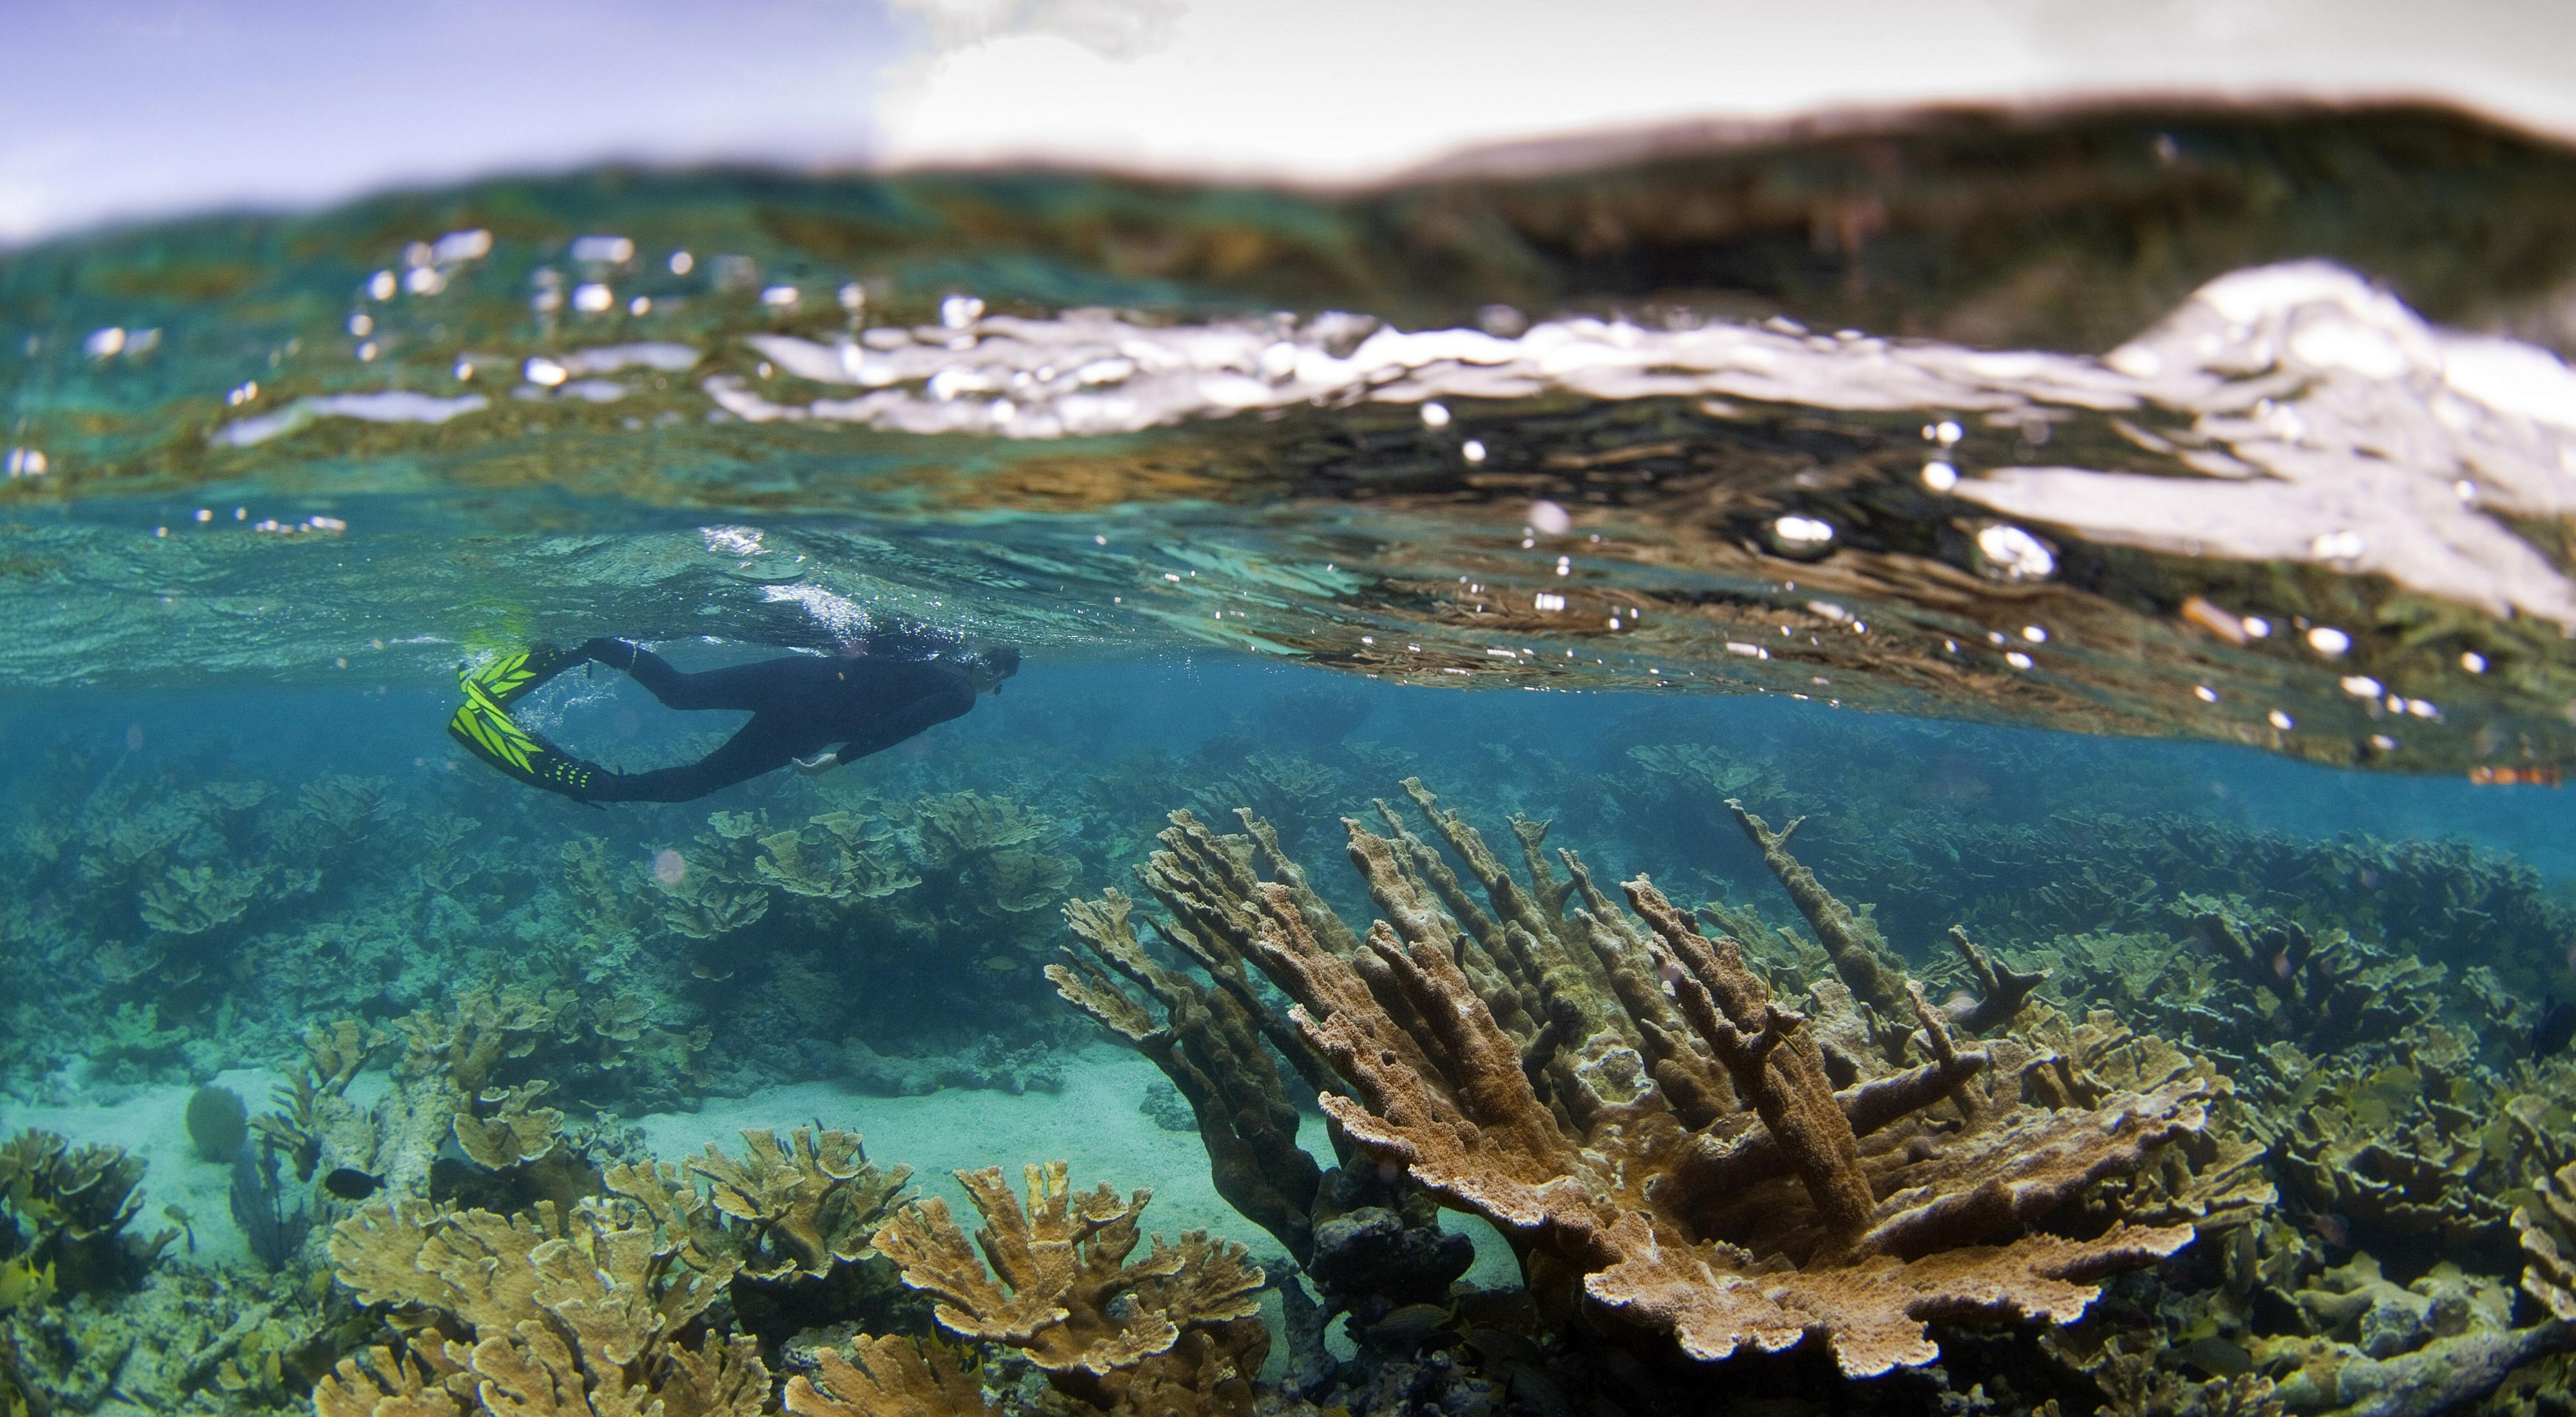 III. Understanding the Coral Restoration Process